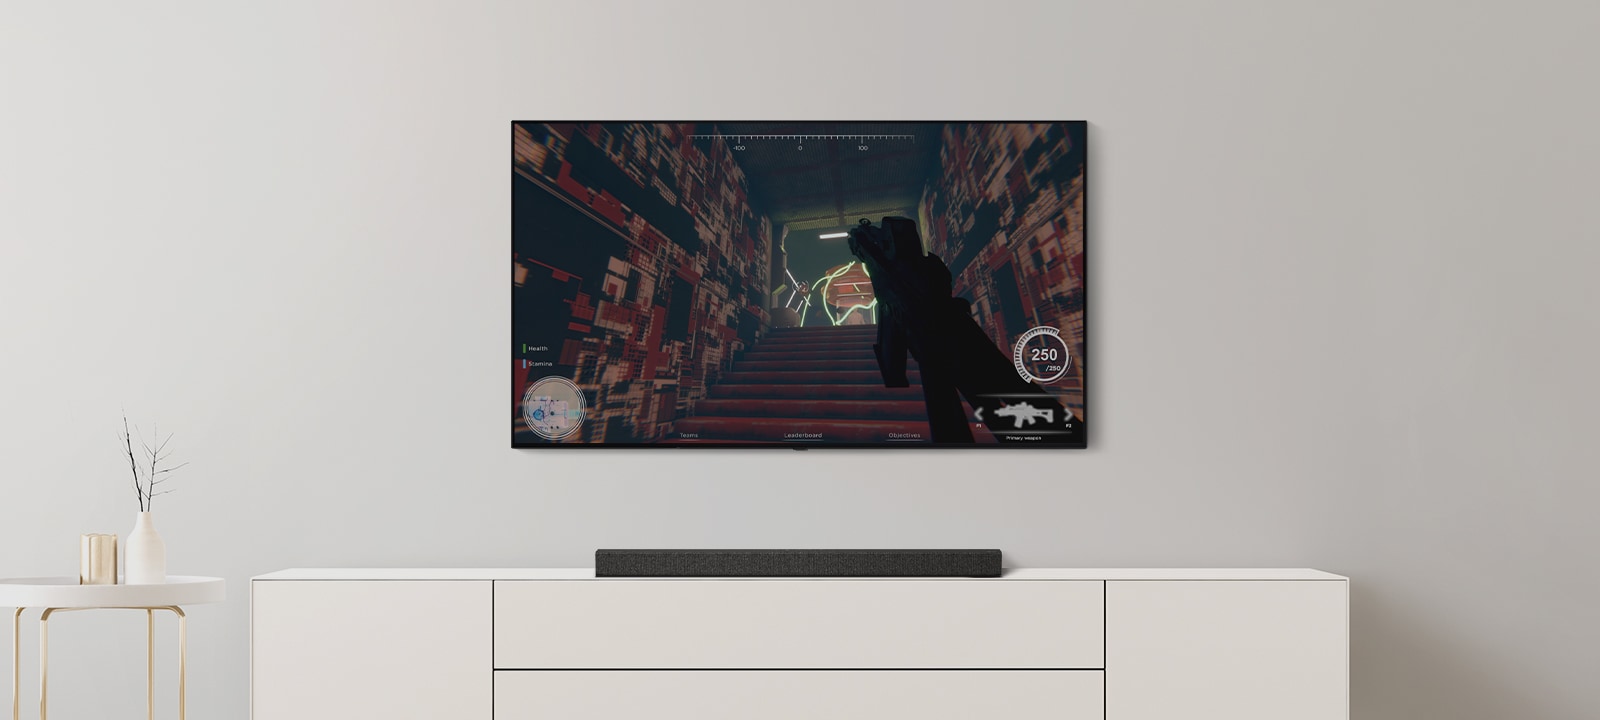 یک تلویزیون و ساندبار در اتاق نشیمن مشاهده می‌شوند. یک بازی FPS در صفحه نمایش تلویزیون در جریان است و کانال تلویزیون به یک مسابقه فوتبال تغییر می‌کند. (ویدئو را پخش کنید)